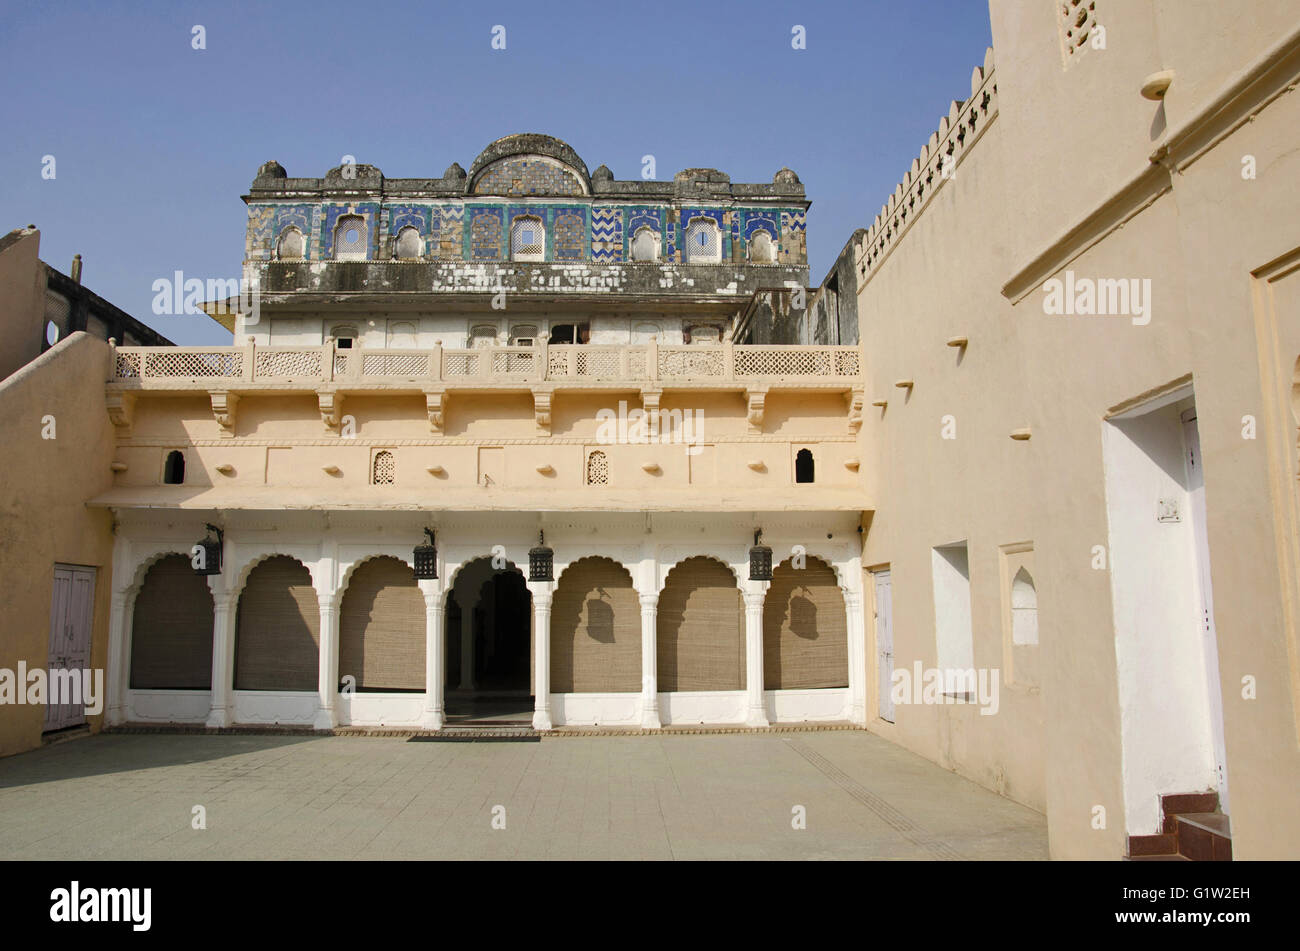 Teilweise mit Blick auf die Sheesh Mahal, die nun in ein Hotel umgewandelt, die auf beiden Seiten flankiert durch Raja mahal und die jahangir Mahal. betwa Stockfoto